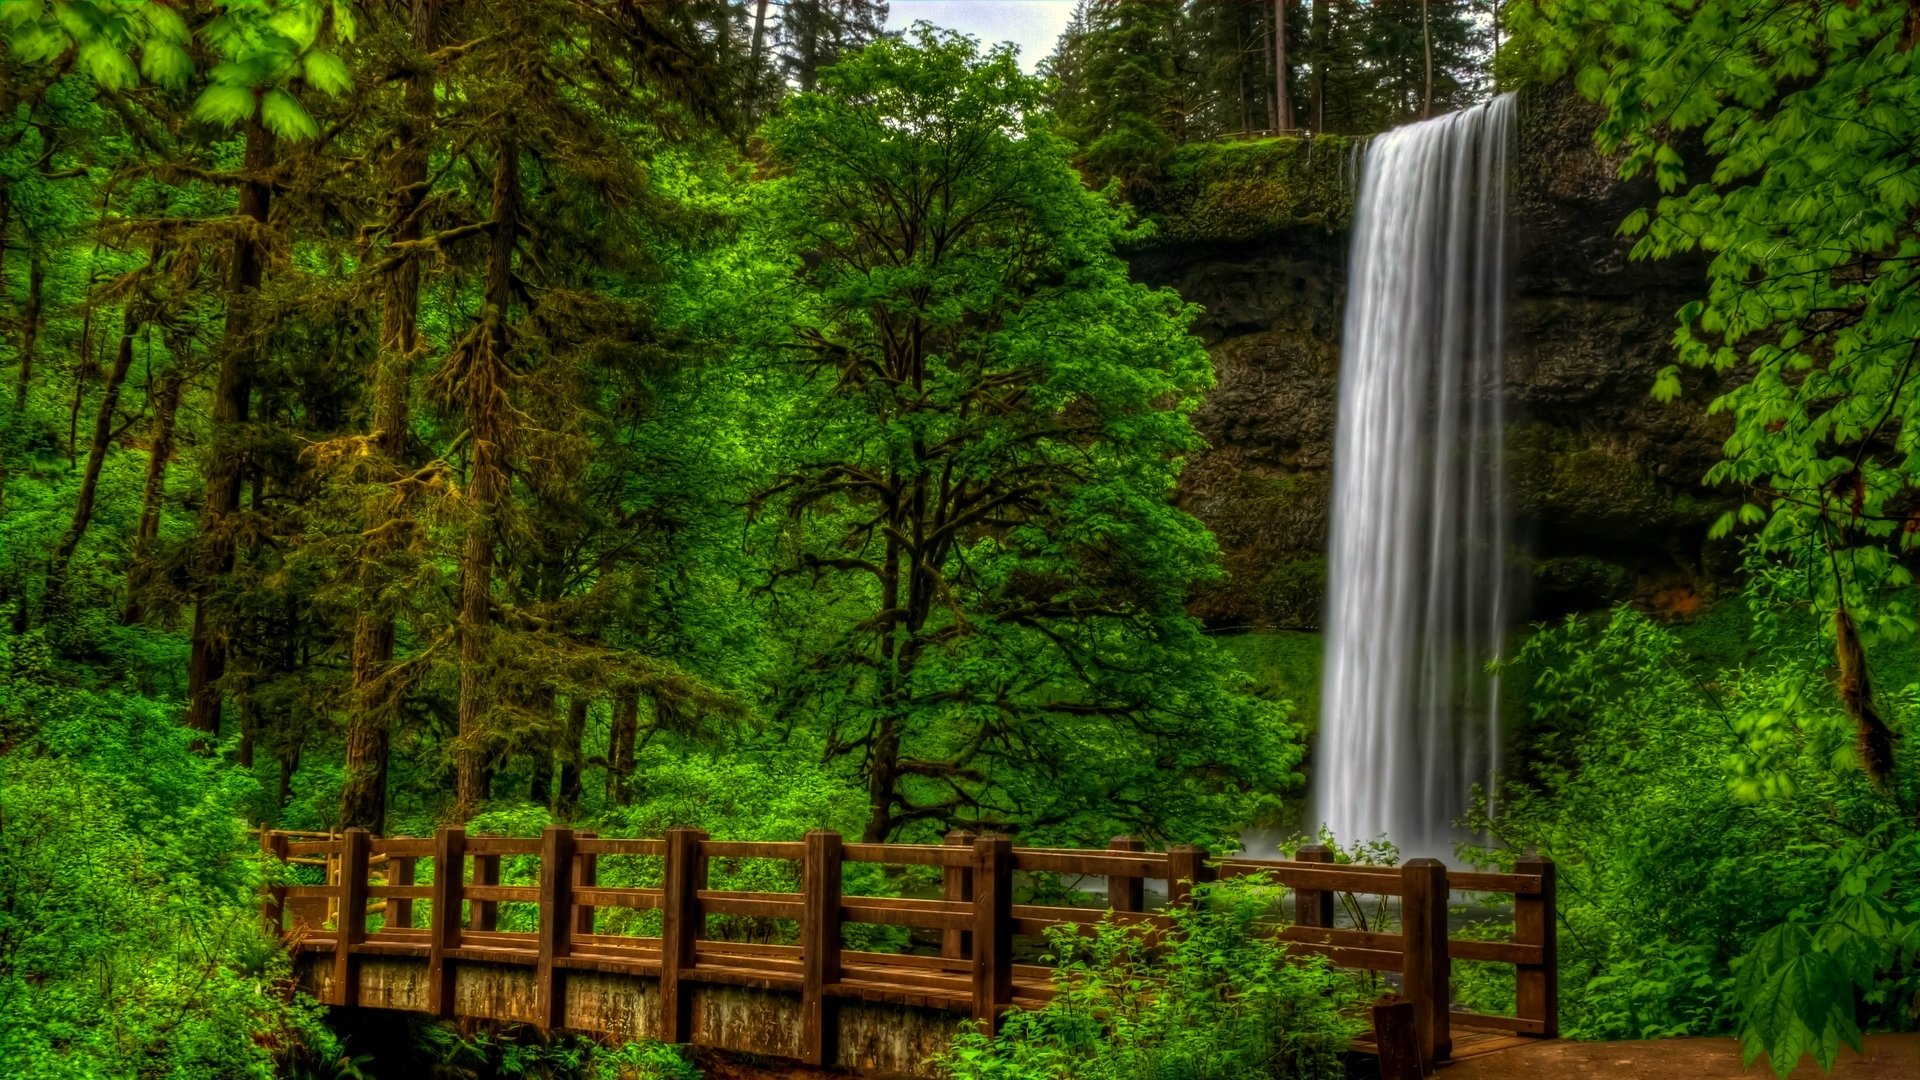 Скачать обои бесплатно Водопад, Парк, Дерево, Зеленый, Ограда, Фотографии картинка на рабочий стол ПК